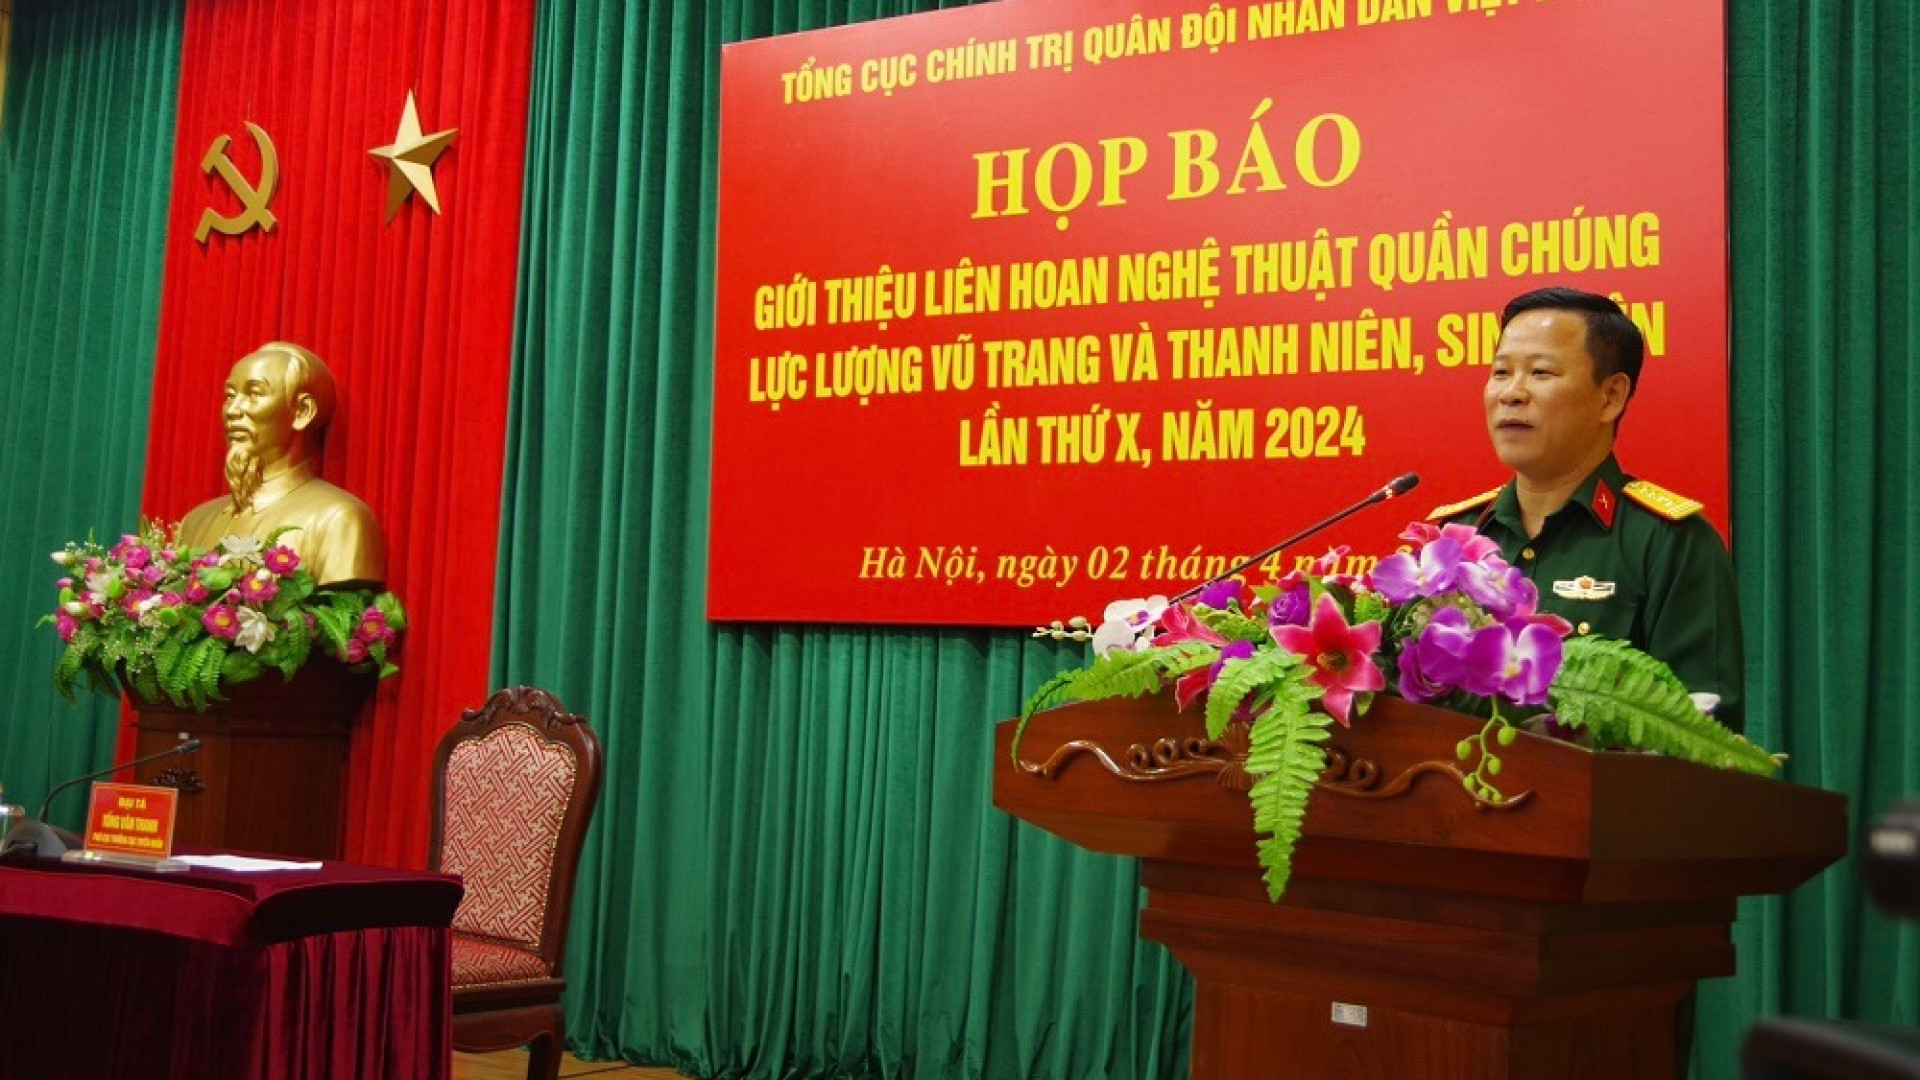 Tổng cục Chính trị QĐND Việt Nam họp báo giới thiệu Liên hoan nghệ thuật quần chúng LLVT và thanh niên, sinh viên lần thứ X, năm 2024